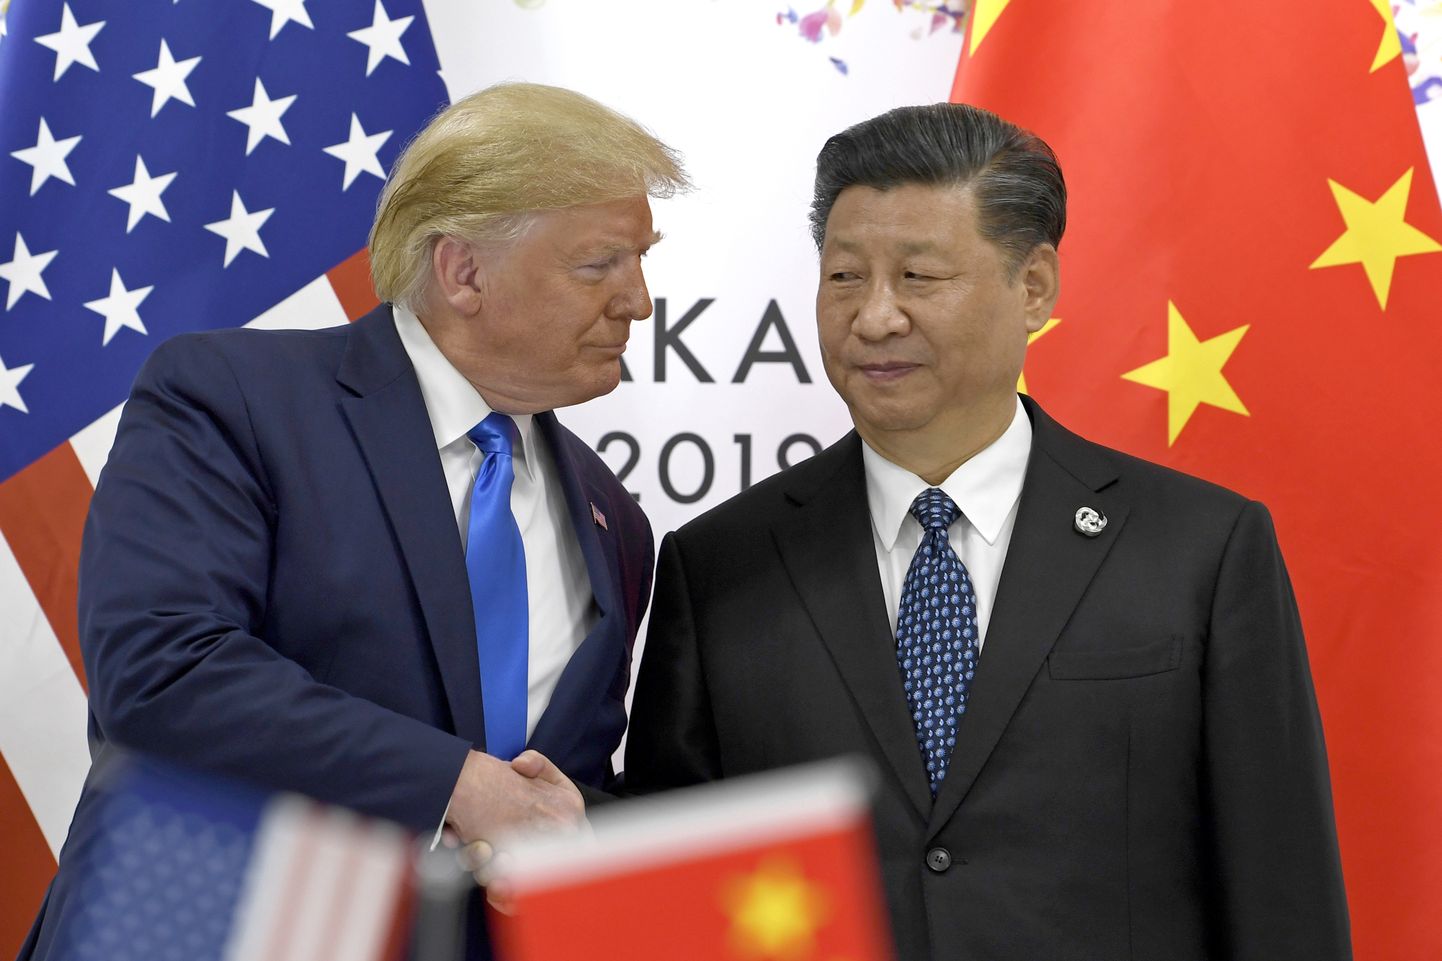 Дональд Трамп пристально всматривается в лидера Китая Си Цзиньпина, саммит G-20, Осака, Япония, июнь 2019 года.